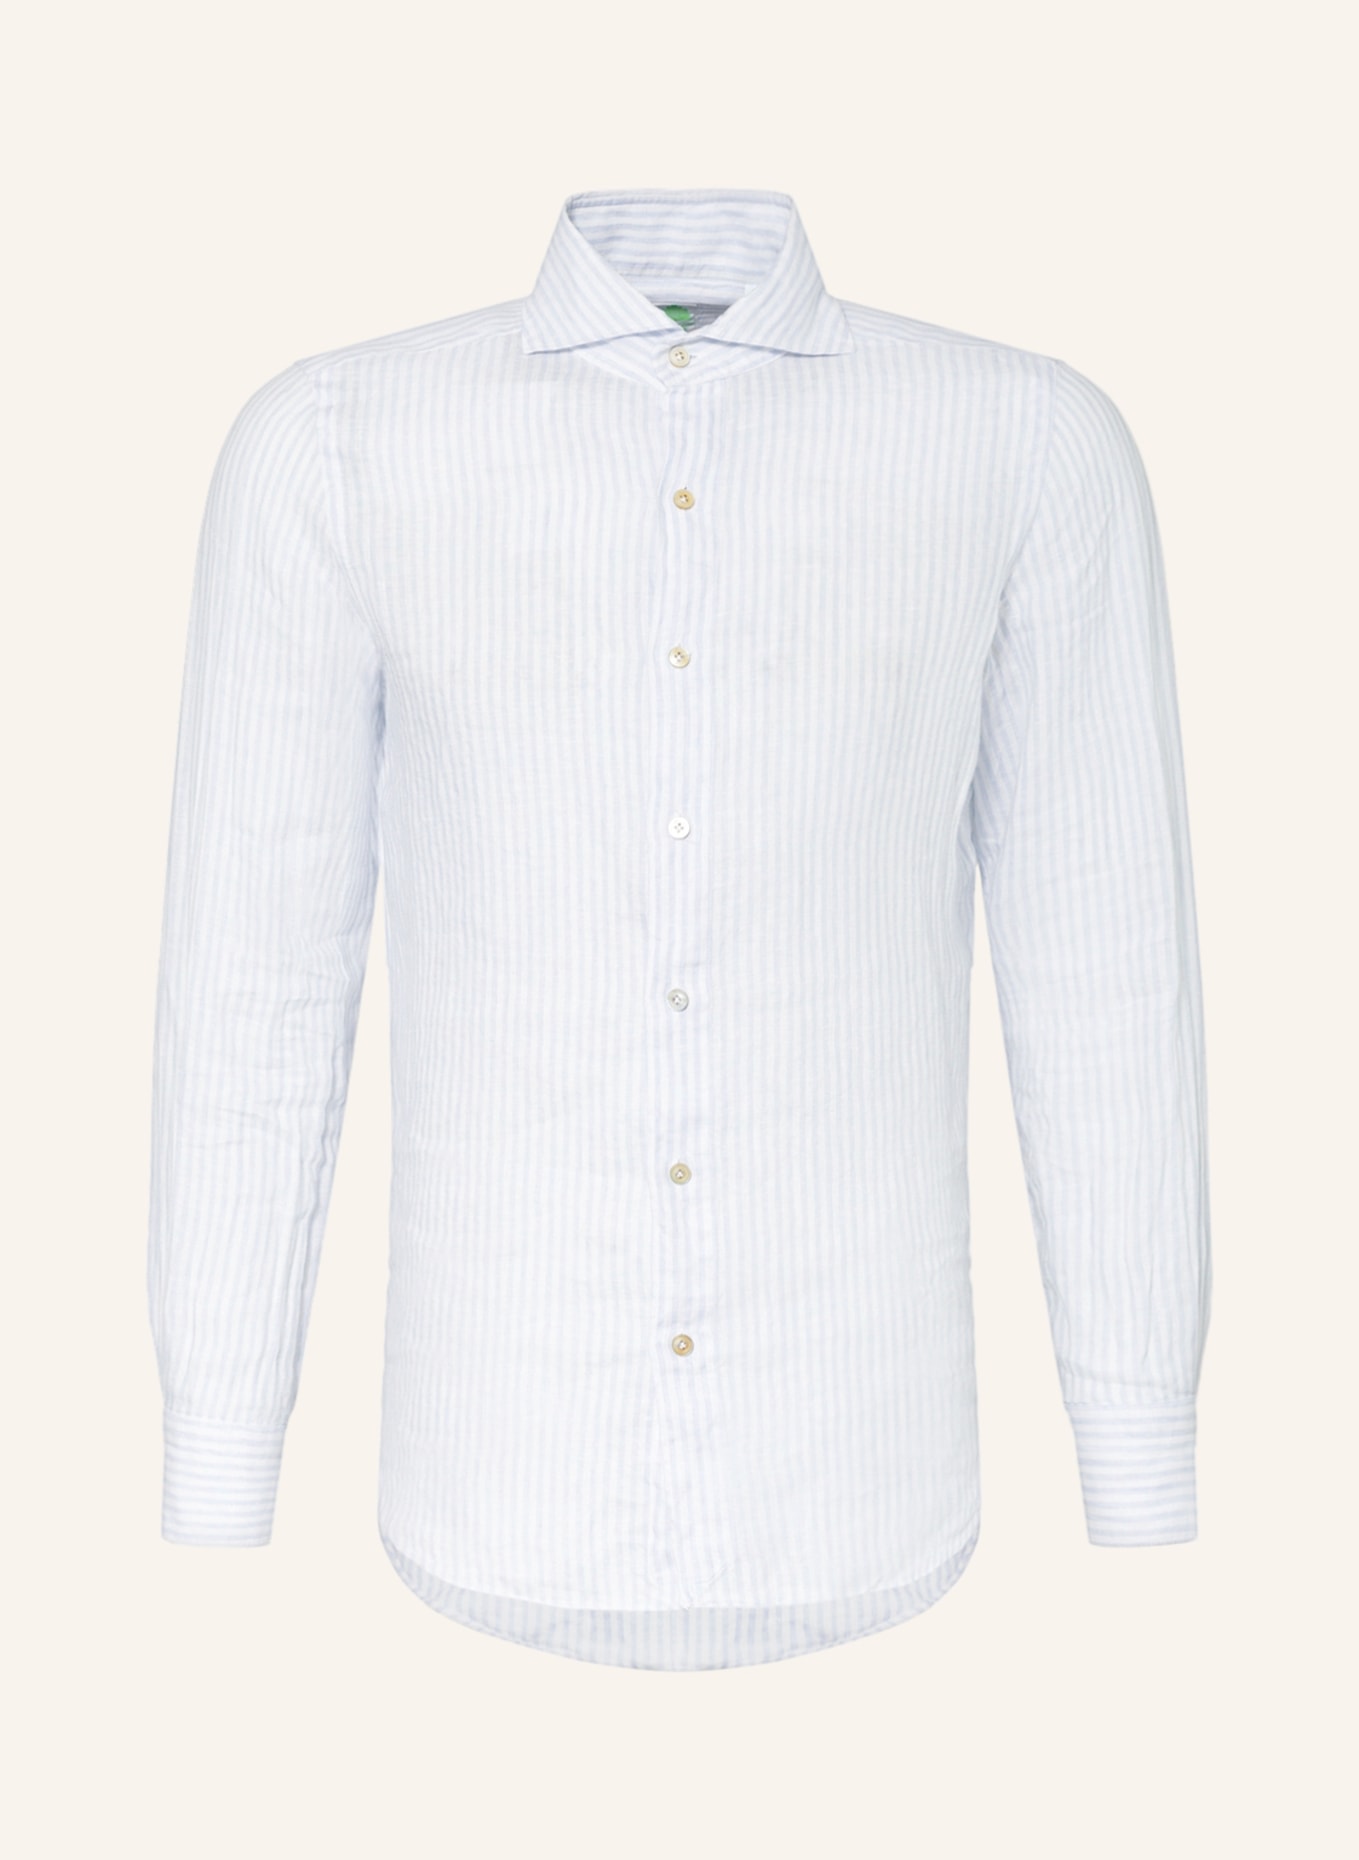 FINAMORE 1925 Linen shirt TOKYO regular fit, Color: LIGHT BLUE/ WHITE (Image 1)